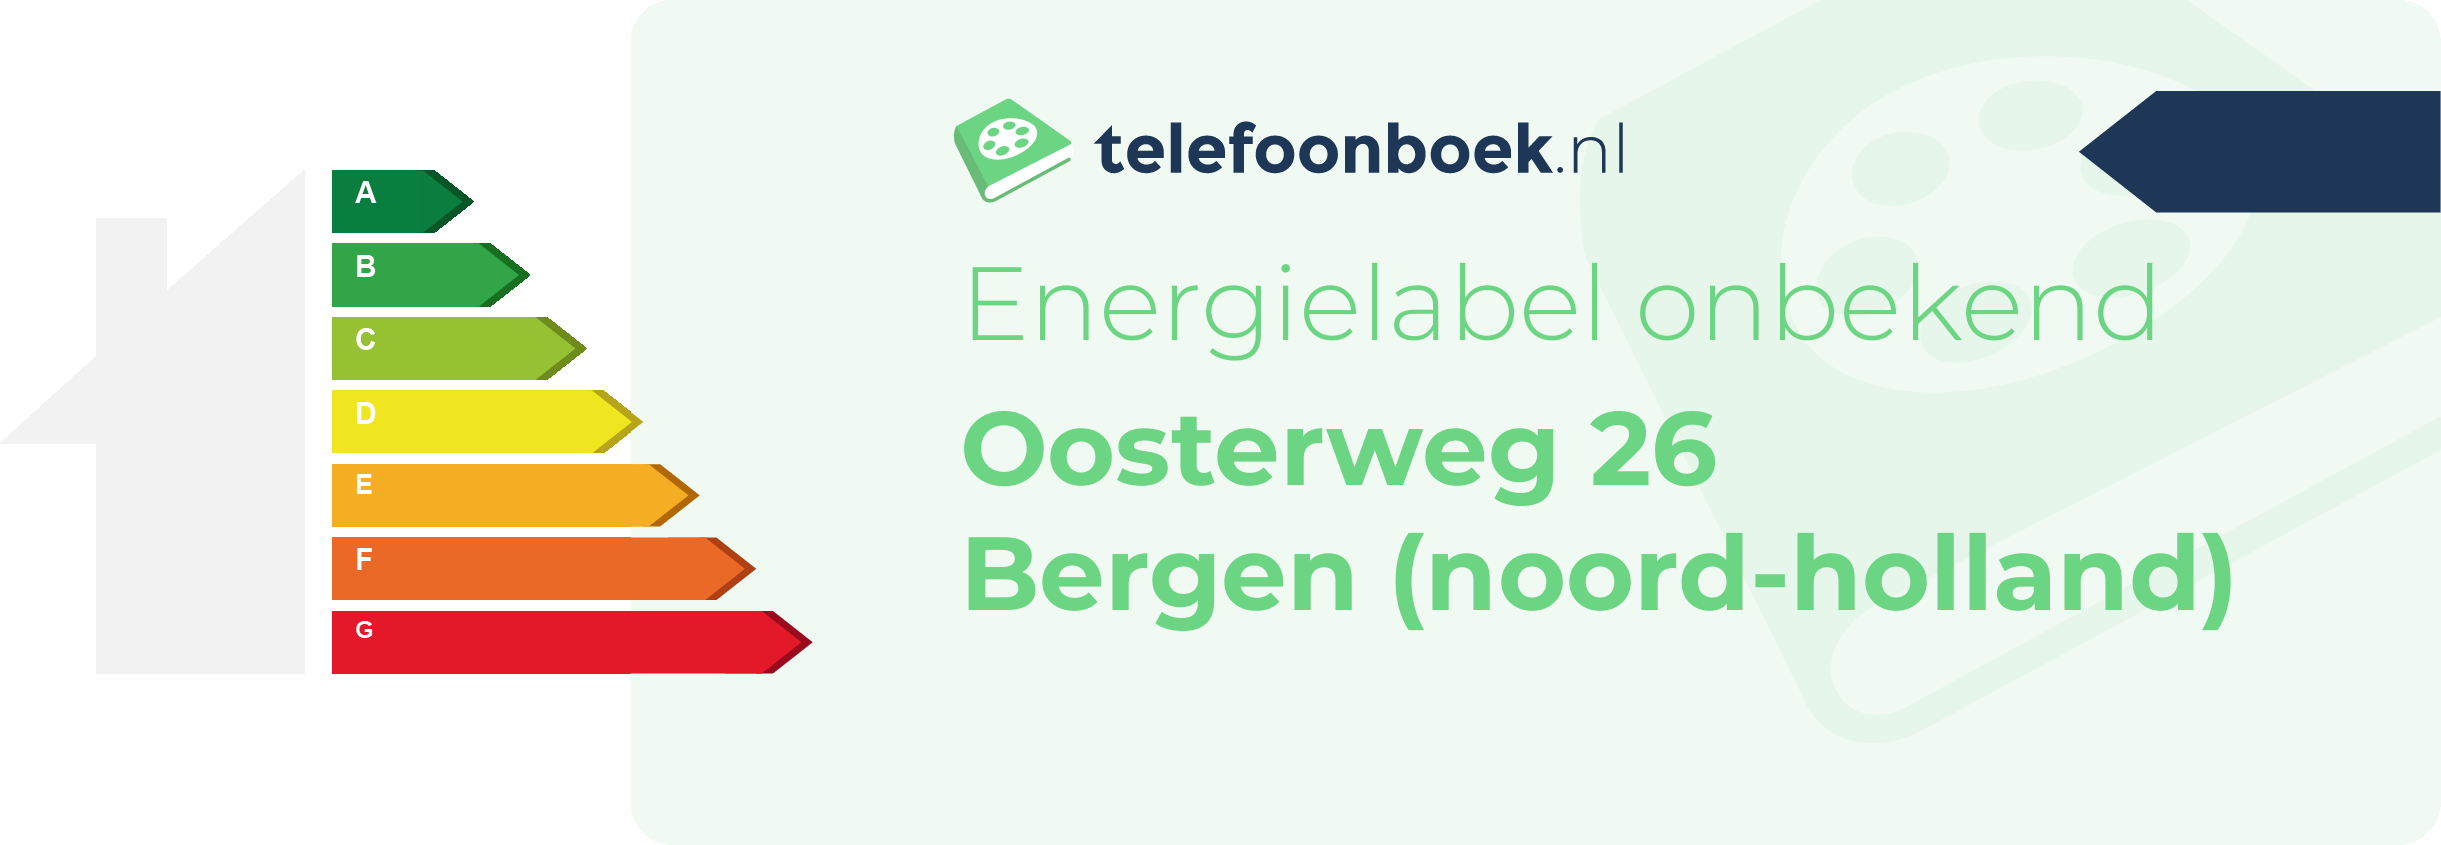 Energielabel Oosterweg 26 Bergen (Noord-Holland)